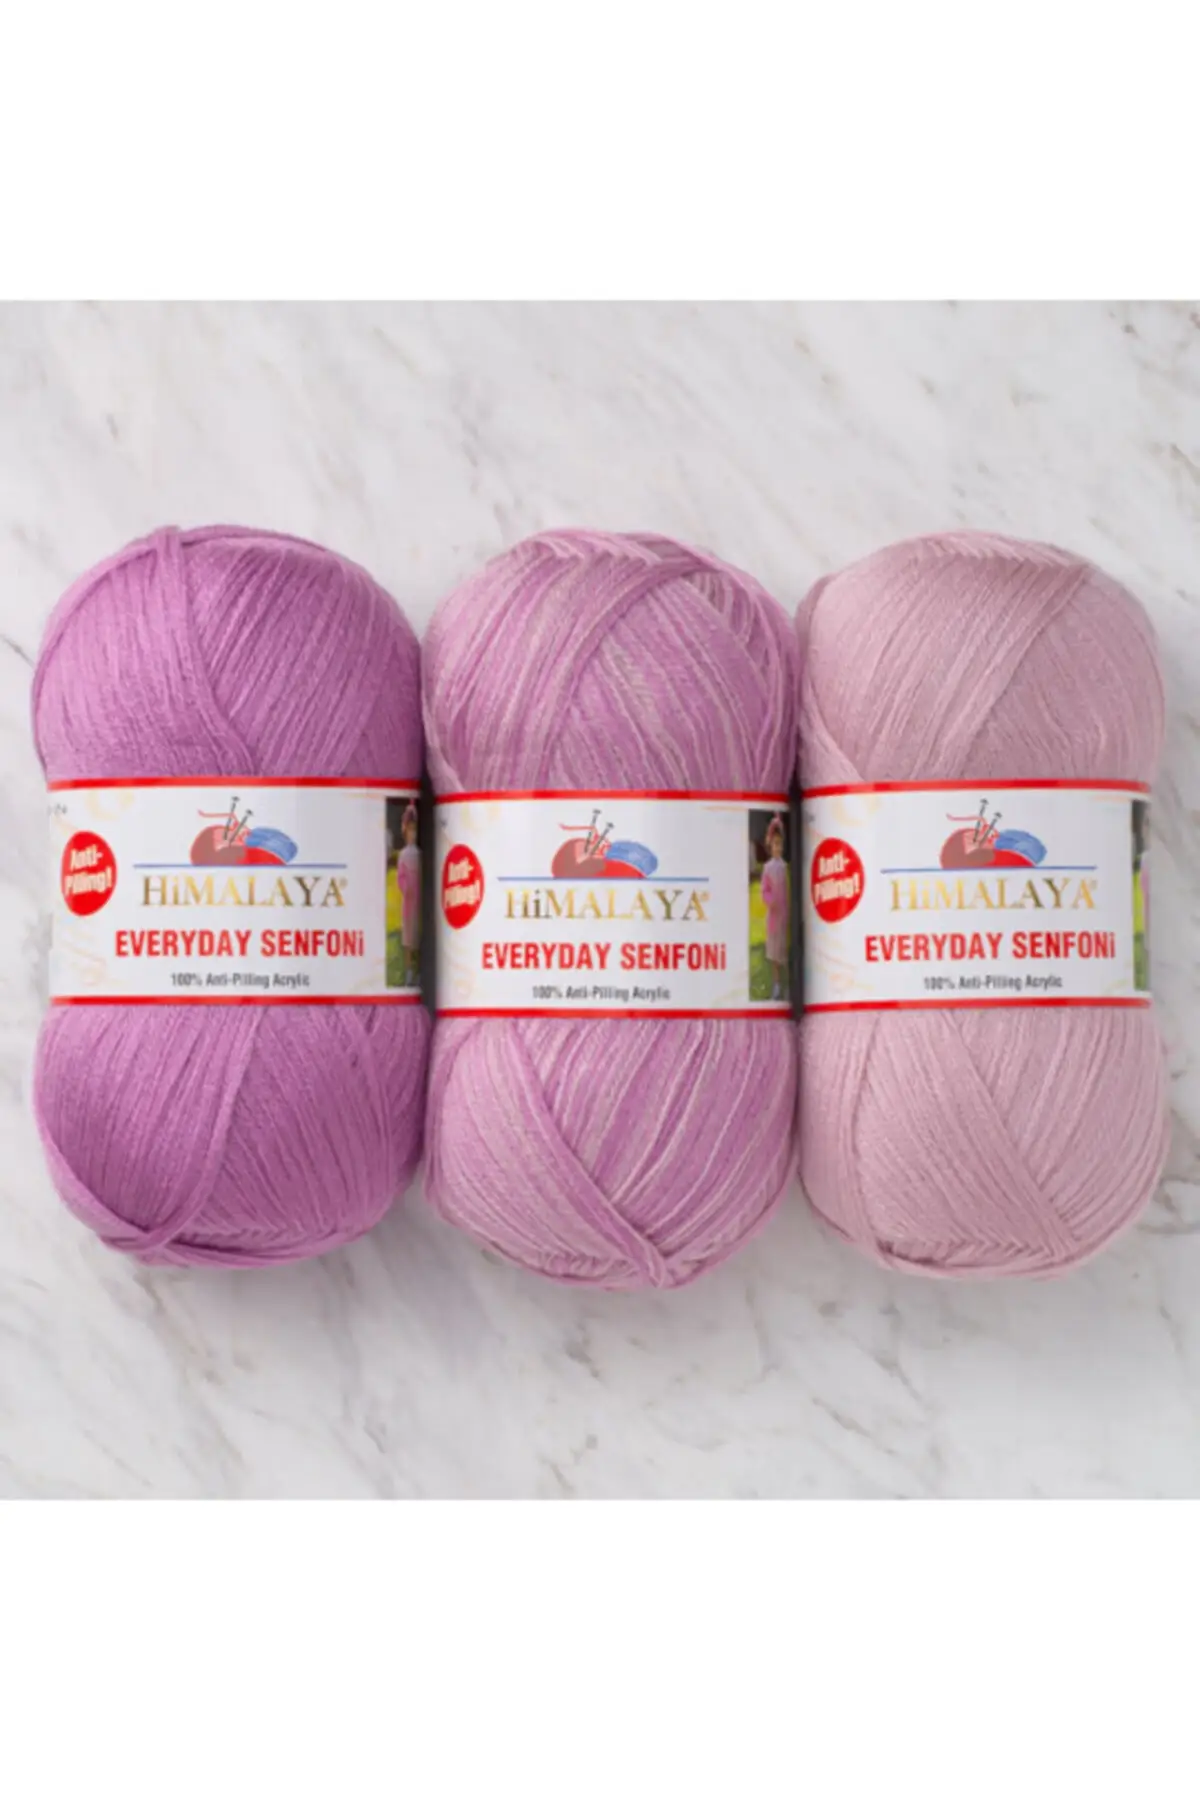 Everyday Symphony 3's Package Hand Knitting Yarn Purple & Lilac 710-09 Knitting Yarn DIY Craft Yarn Hobby Yarn